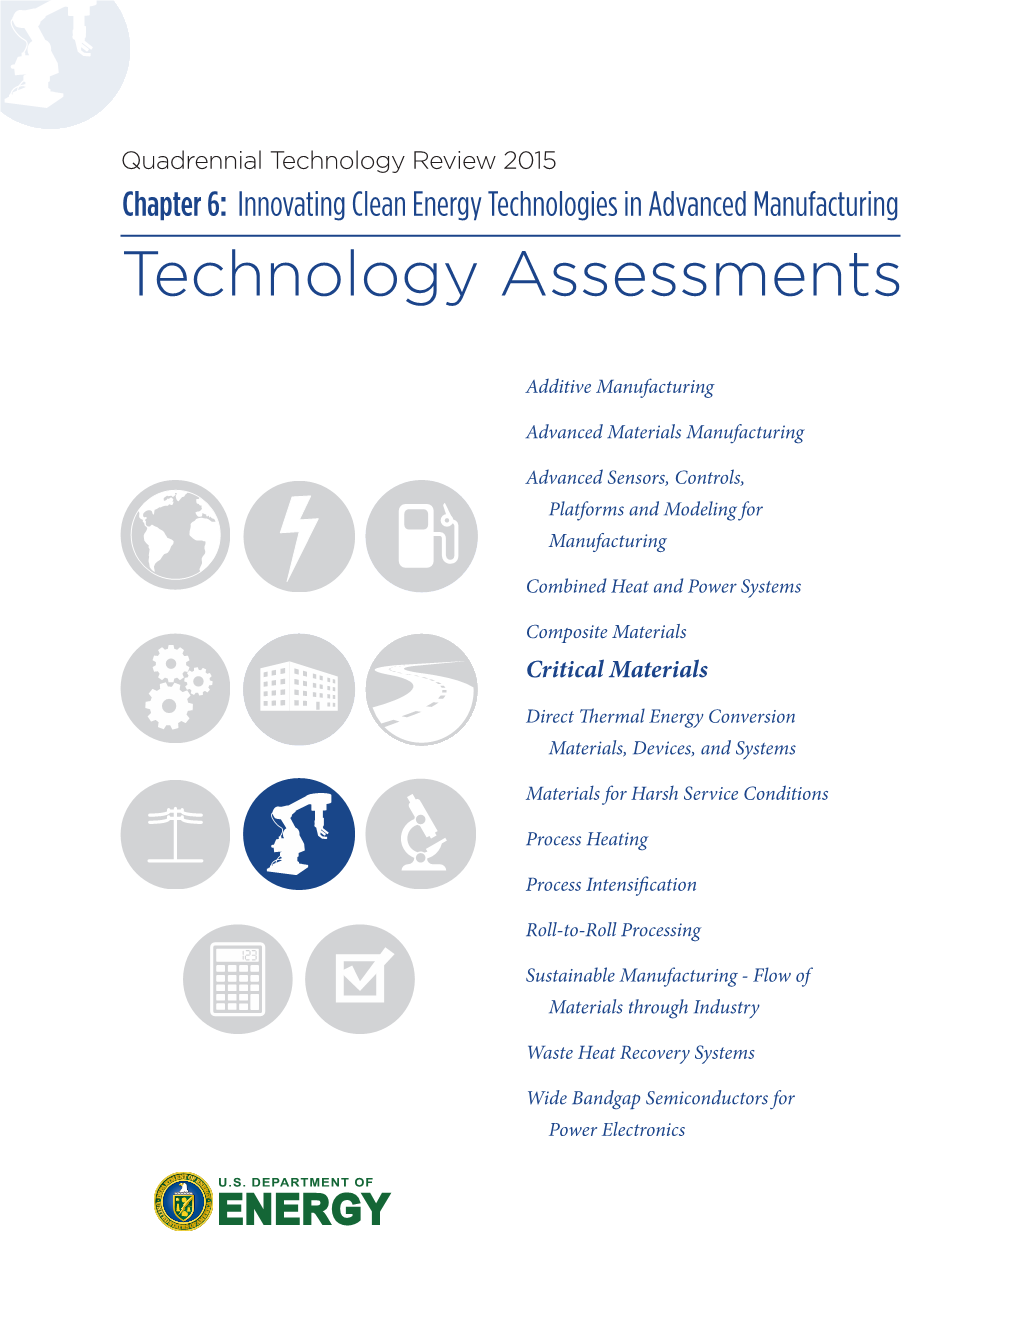 Critical Materials Technology Assessment